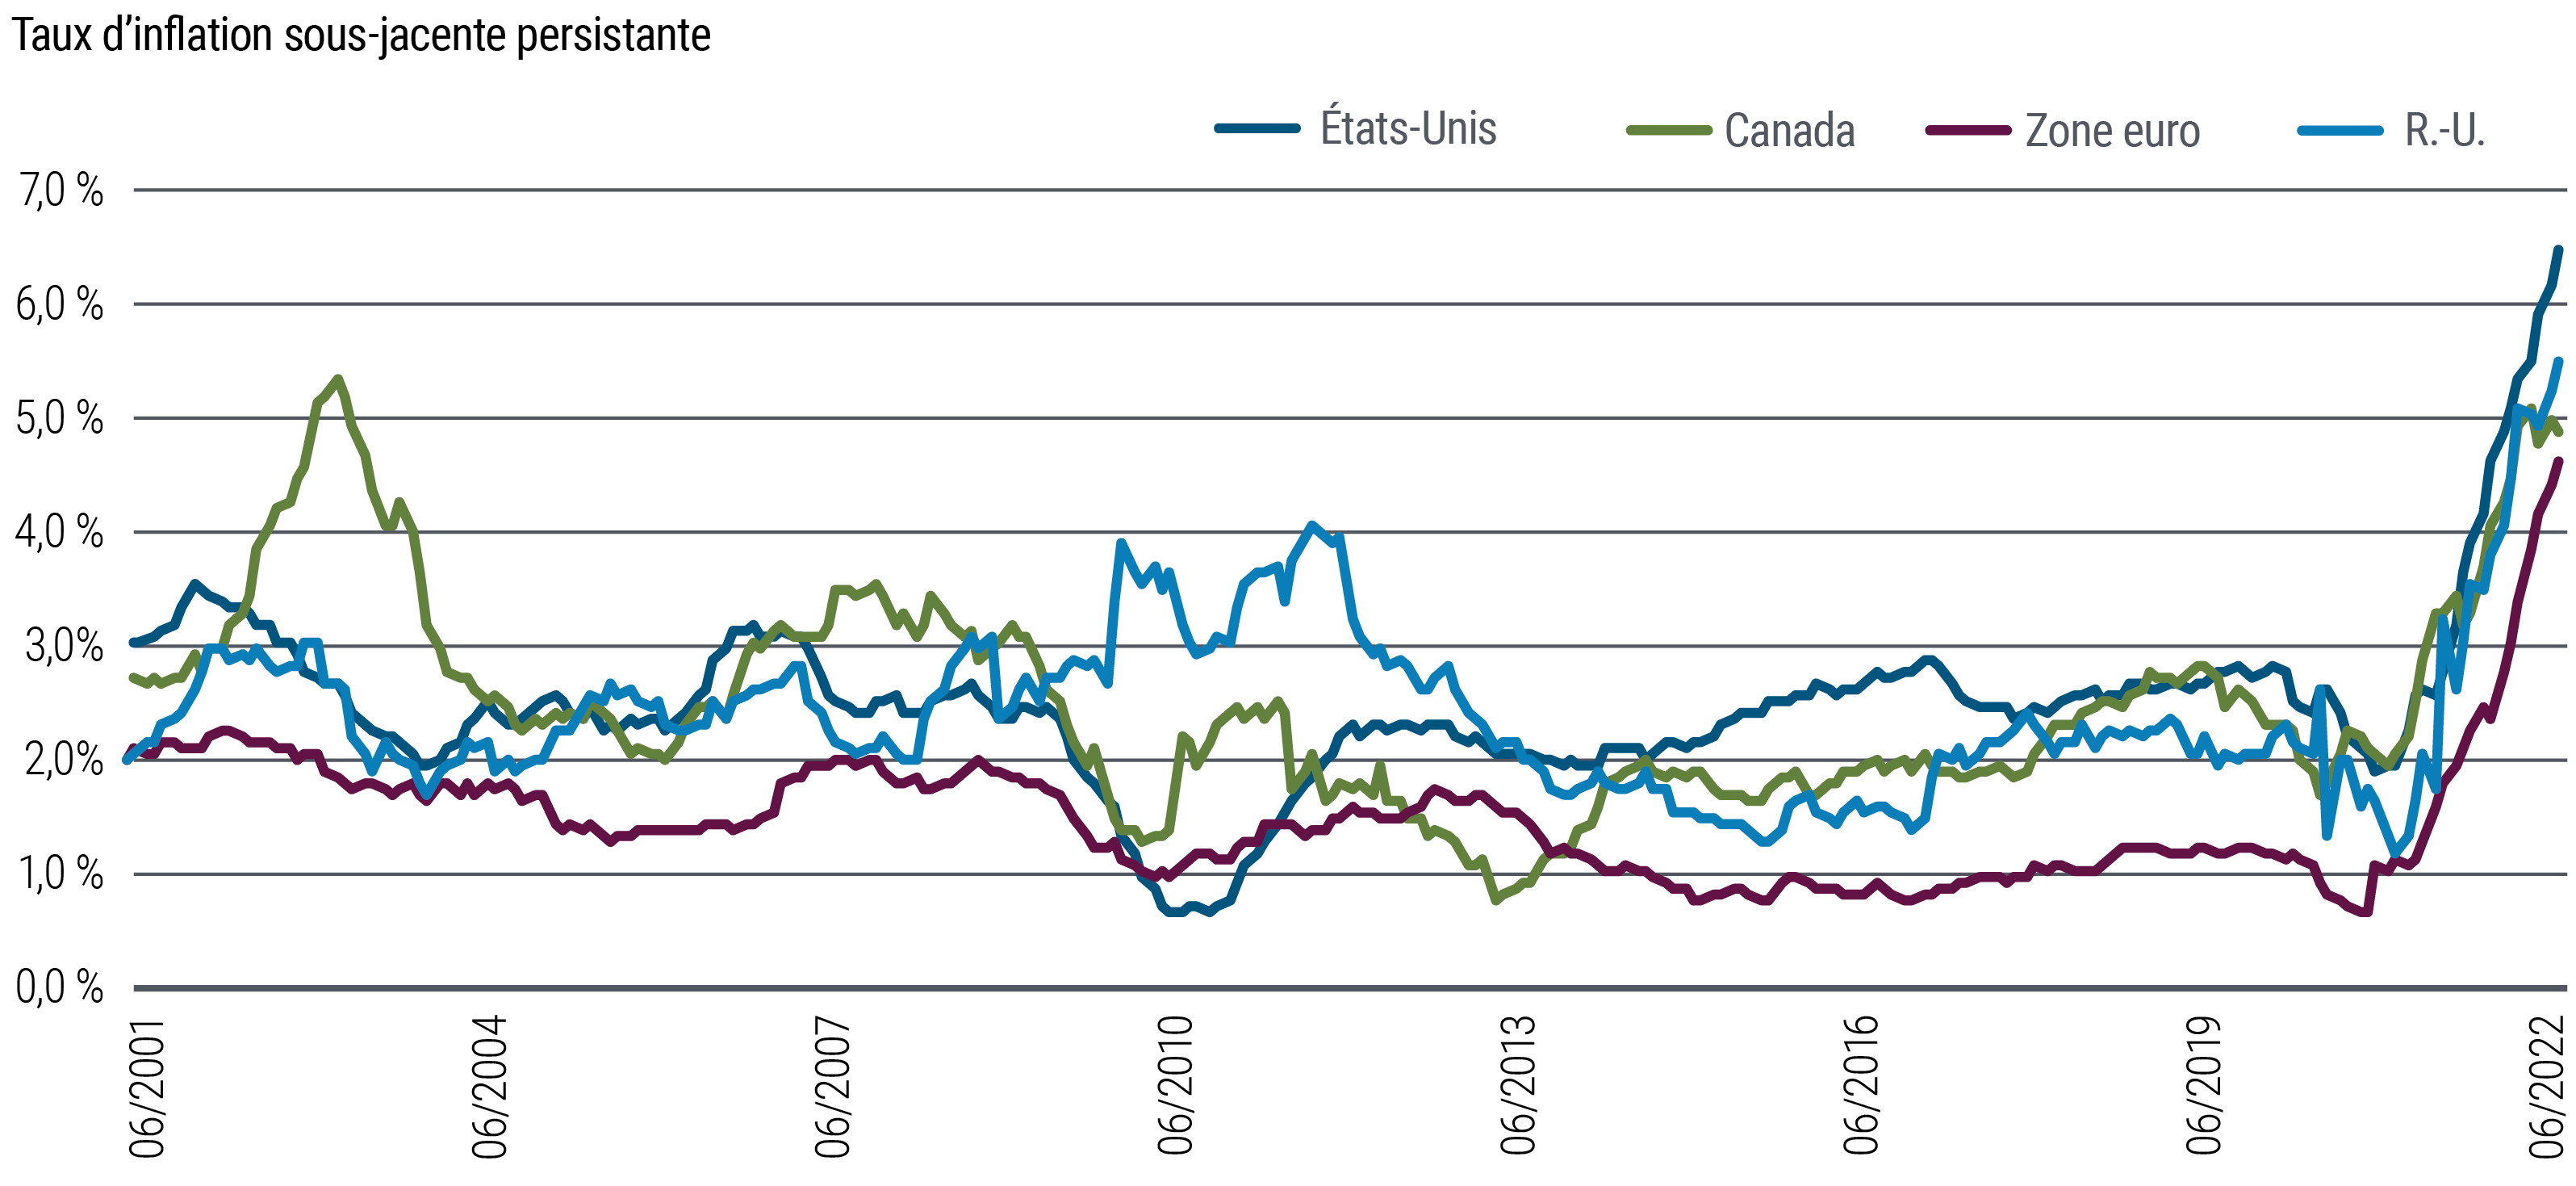 Un graphique linéaire montre les taux d'inflation core « persistante » entre juin 2001 et juillet 2022 pour les États-Unis, le Canada, le Royaume-Uni et la zone euro. L'adjectif « persistante » est défini sous le graphique. L'IPC persistant s'est récemment inscrit en forte hausse dans toutes les régions considérées, à commencer par le Royaume-Uni fin 2020, suivi par les autres pays début 2021. Au 31 juillet 2022, l'IPC persistant des États-Unis s'établissait à 6,5 %, contre un peu moins de 2 % début 2021. Dans la zone euro, ce chiffre est passé de 0,7 % fin 2020 à 4,7 % fin juillet. Le graphique montre par ailleurs comment l’inflation persistante dans toutes les régions a récemment franchi la fourchette normale dans laquelle elle a évolué pendant environ deux décennies.